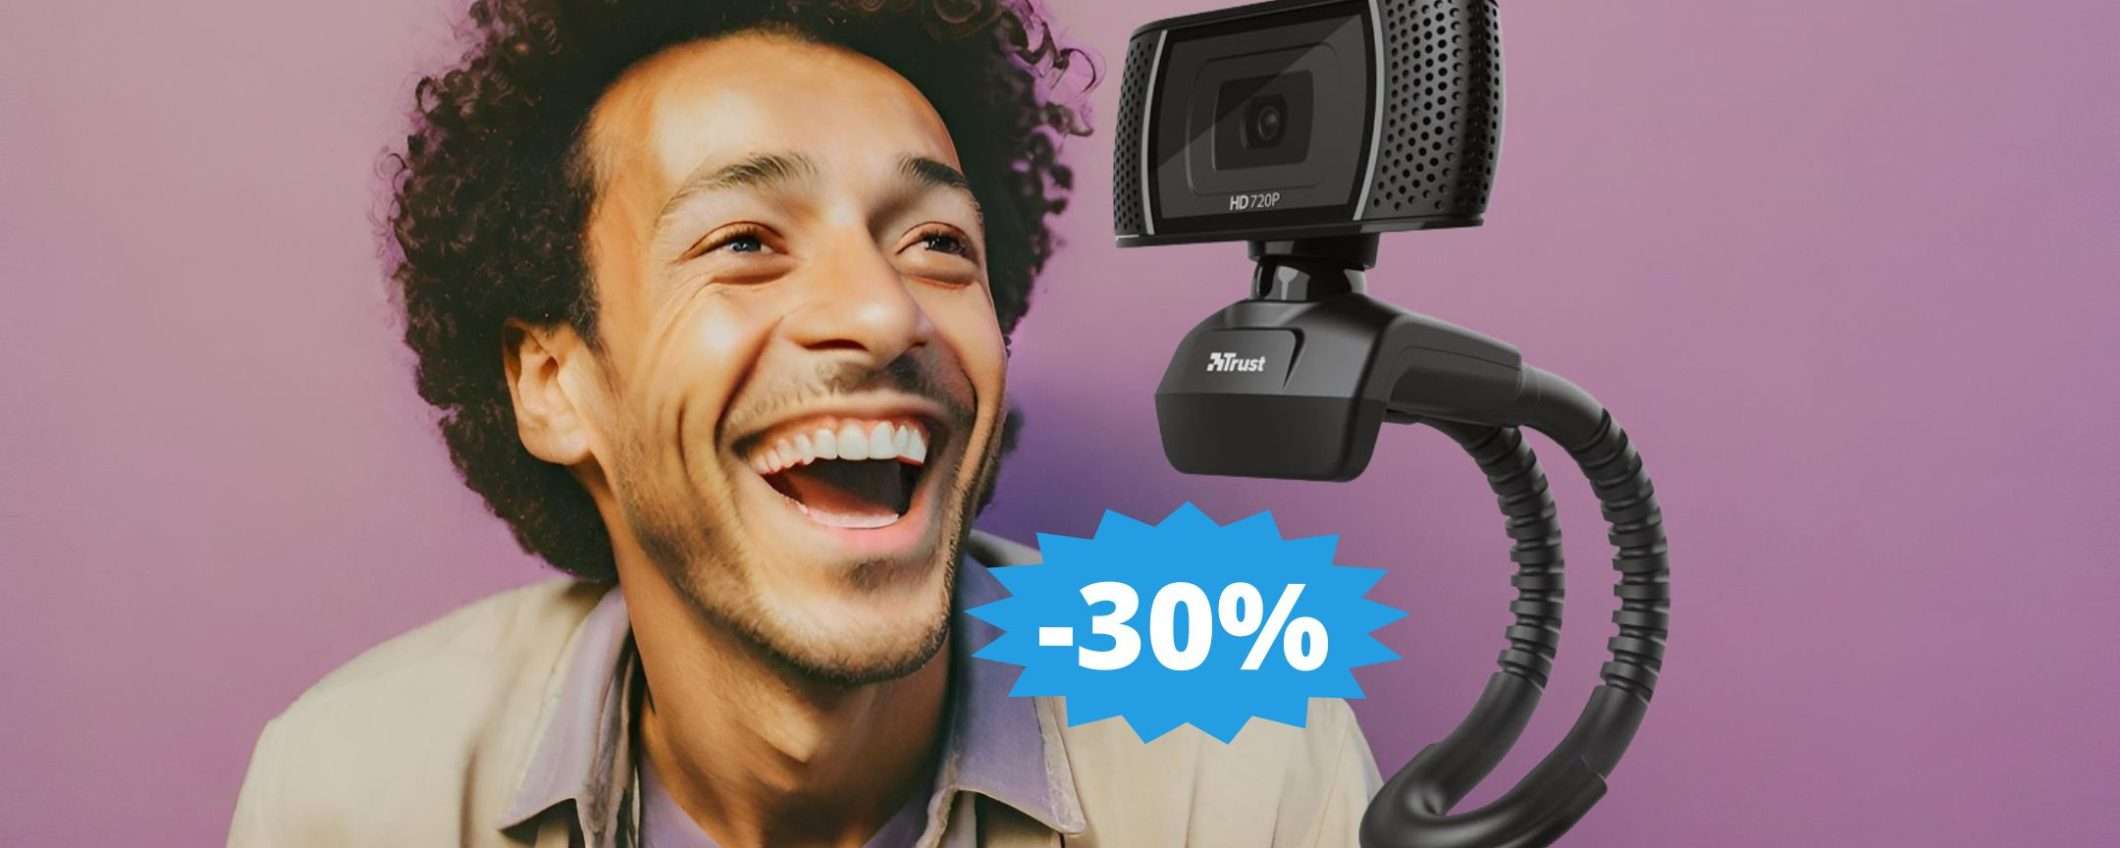 Webcam Trust Trino: sconto IRRESISTIBILE del 30% su Amazon